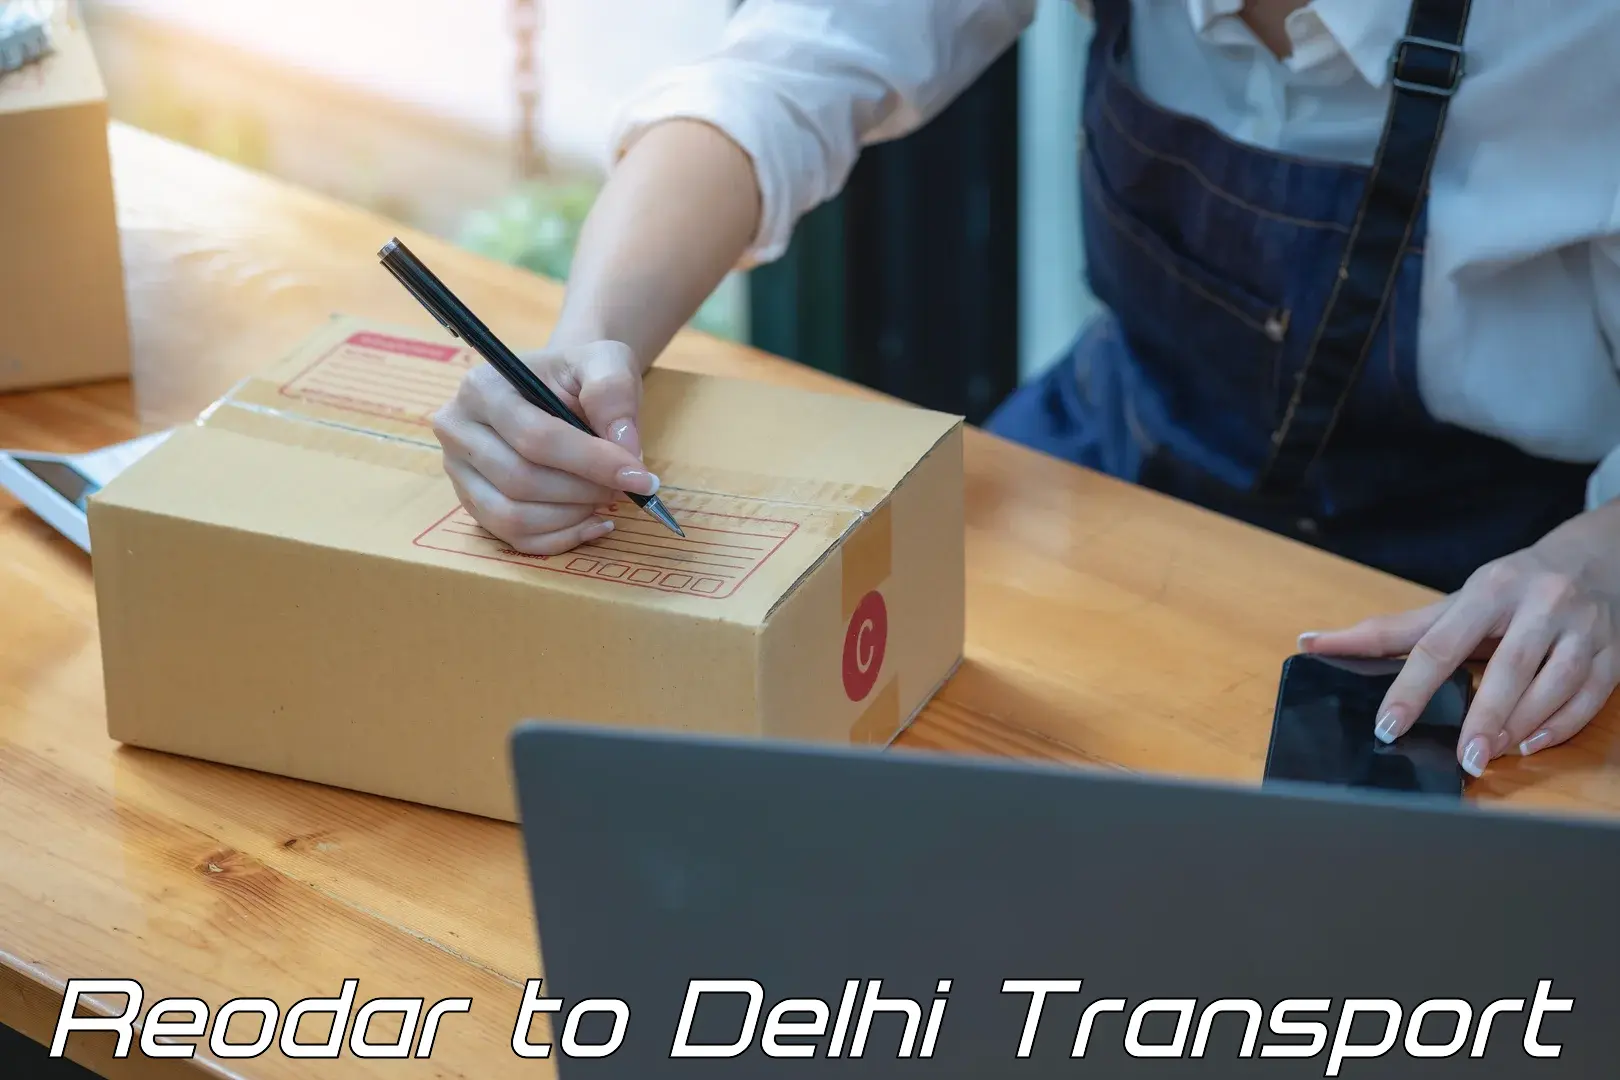 Online transport booking Reodar to IIT Delhi